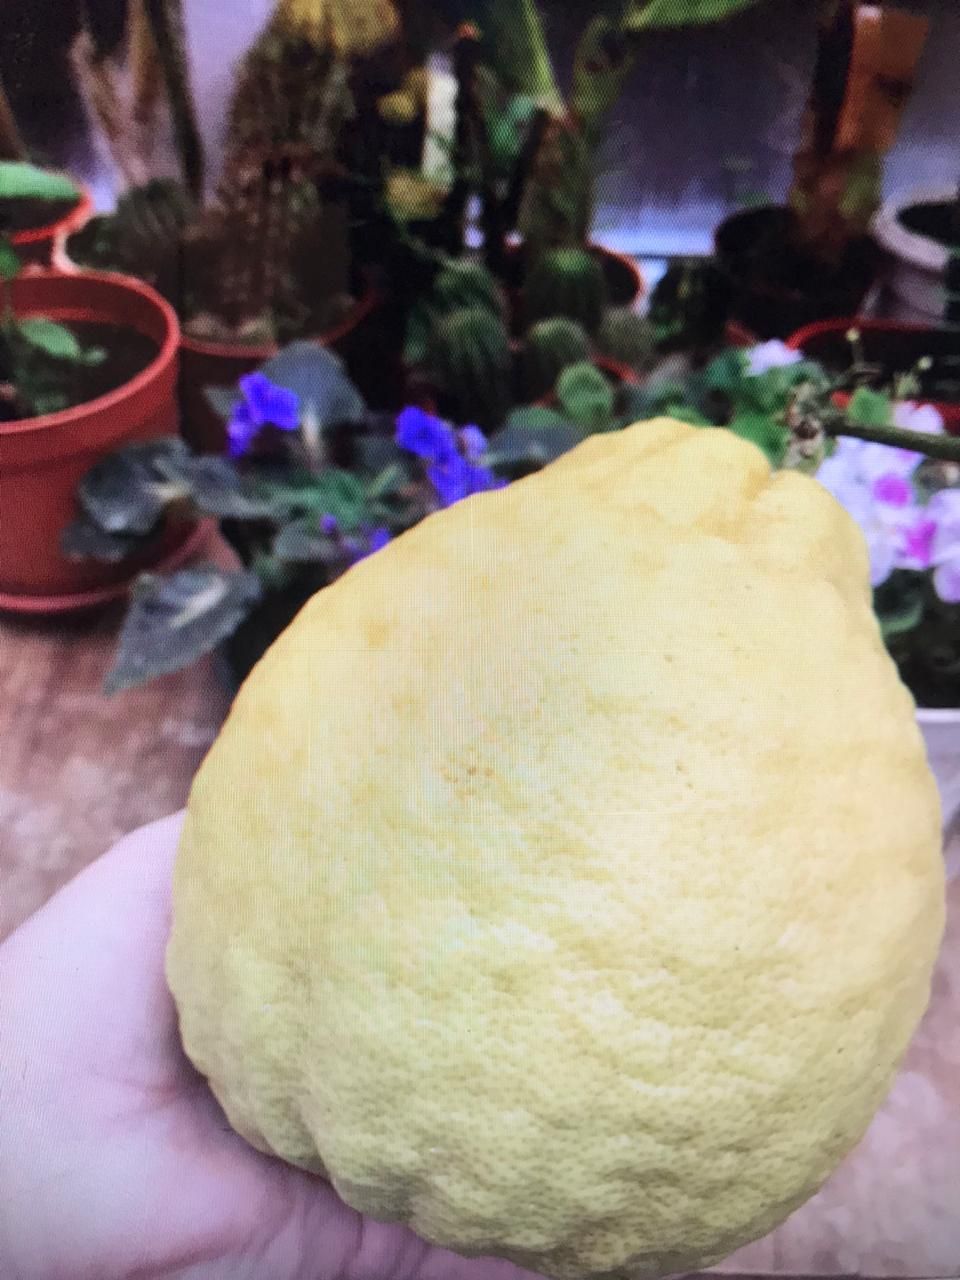 Отдельные лимоны весят больше килограмма